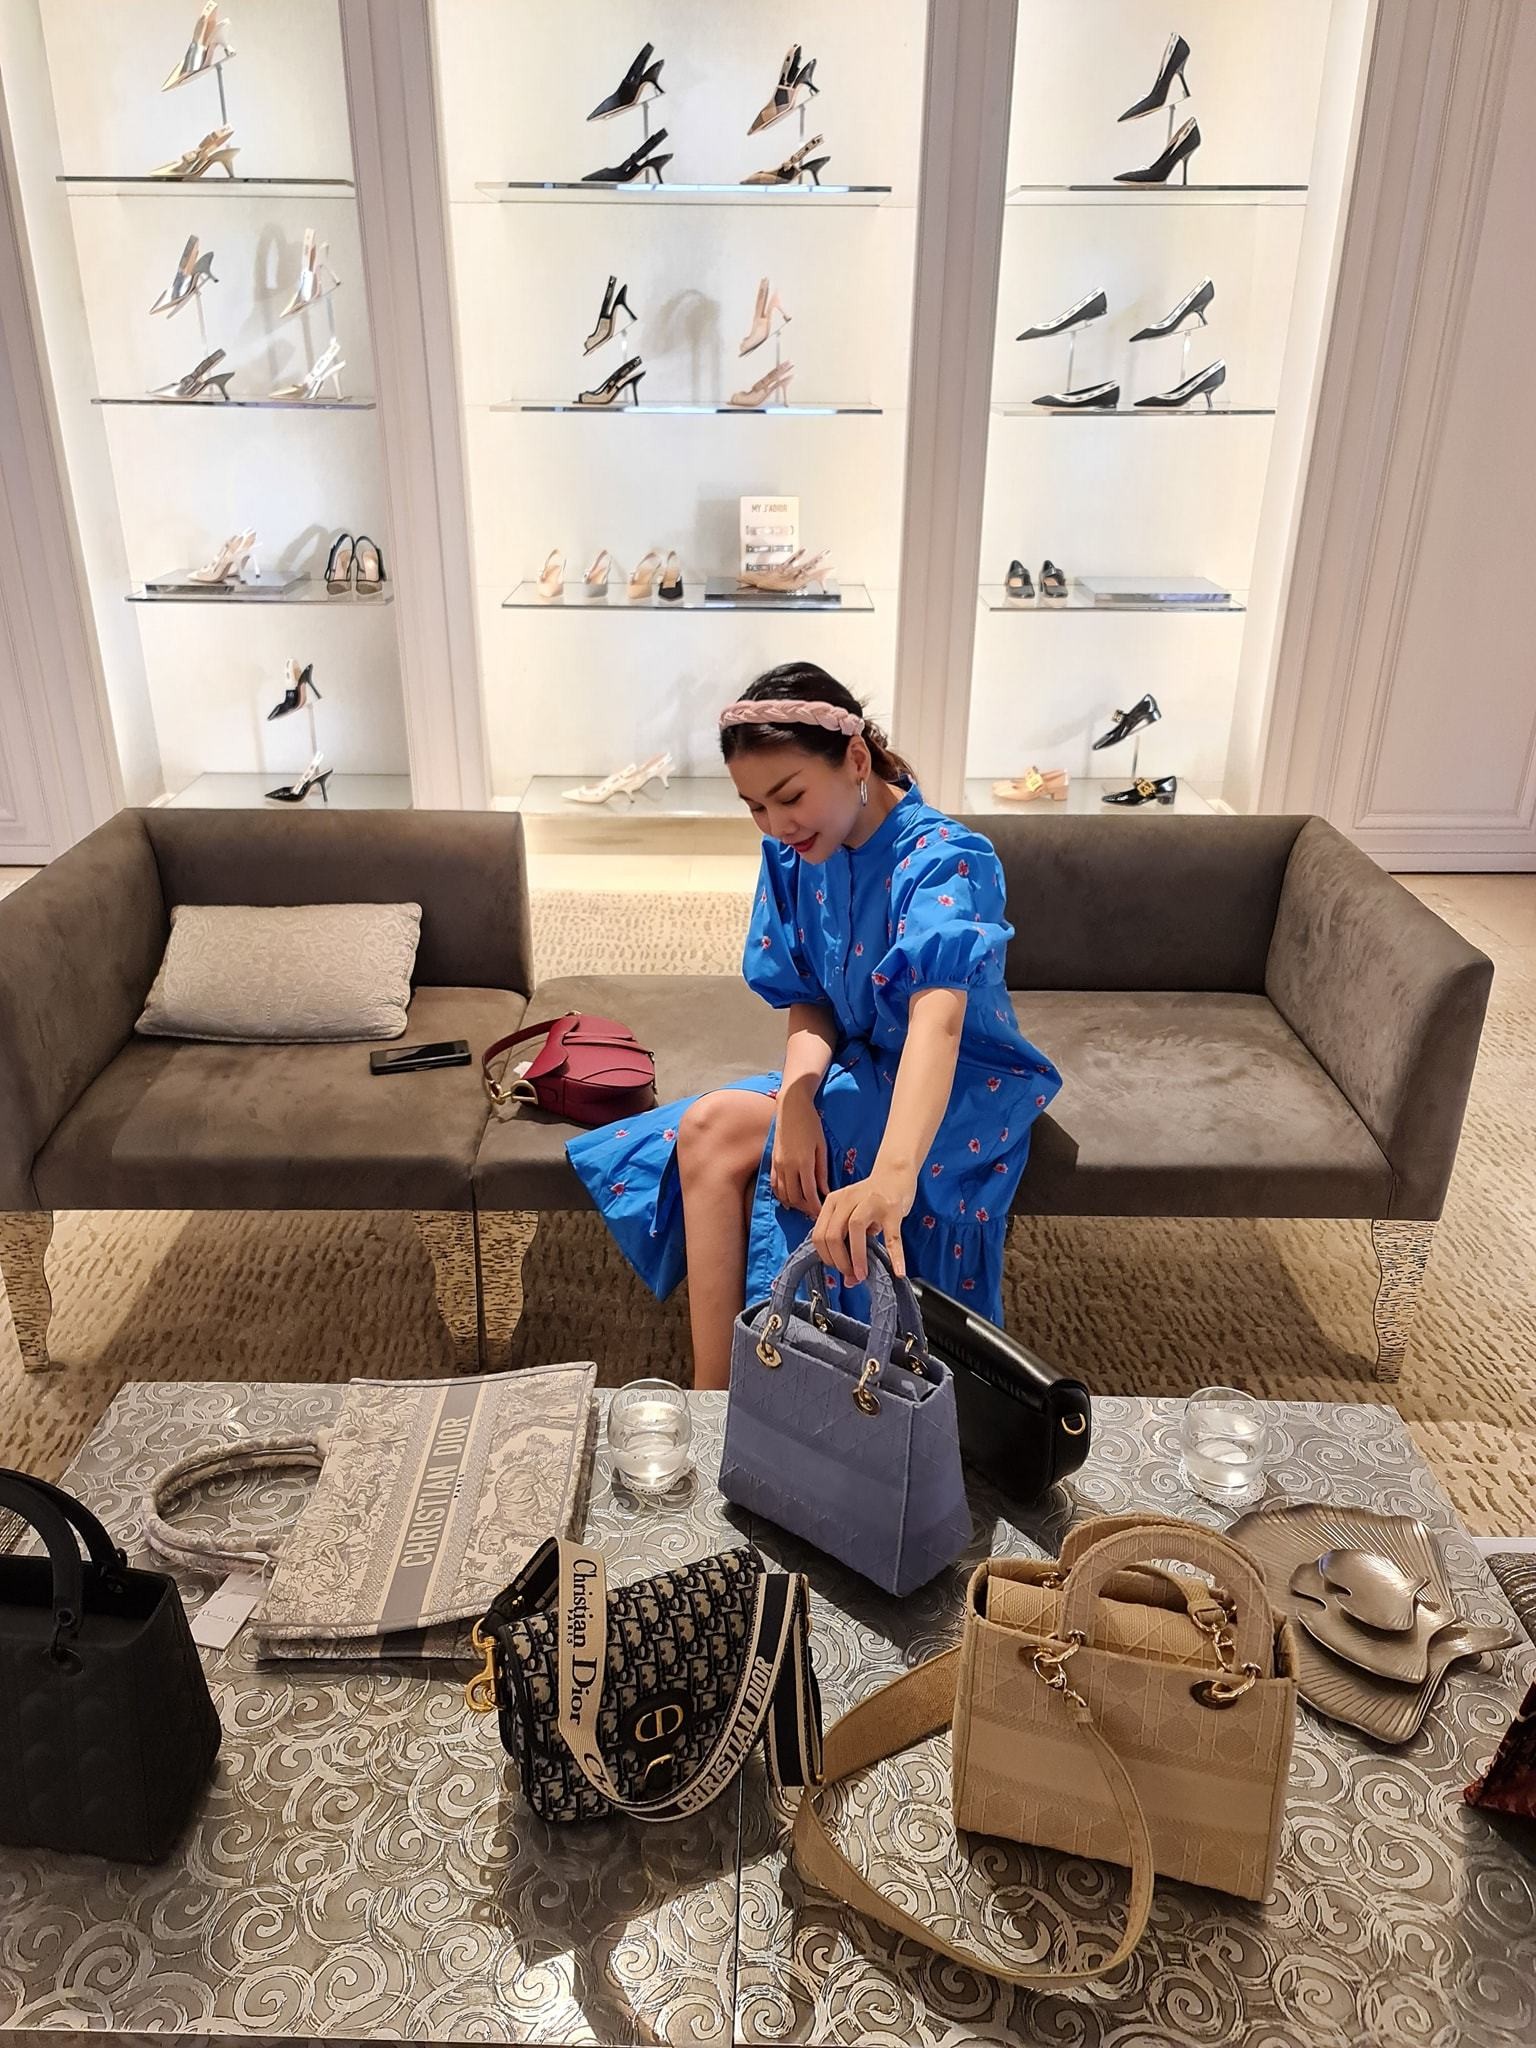 
Người đẹp có bộ sưu tập hàng hiệu vô cùng đồ sộ, trong đó có nhiều túi xách xa xỉ đến từ những thương hiệu đình đám trên thế giới như: Chanel, Dior, Hermes, Burberry, Louis Vuitton...
